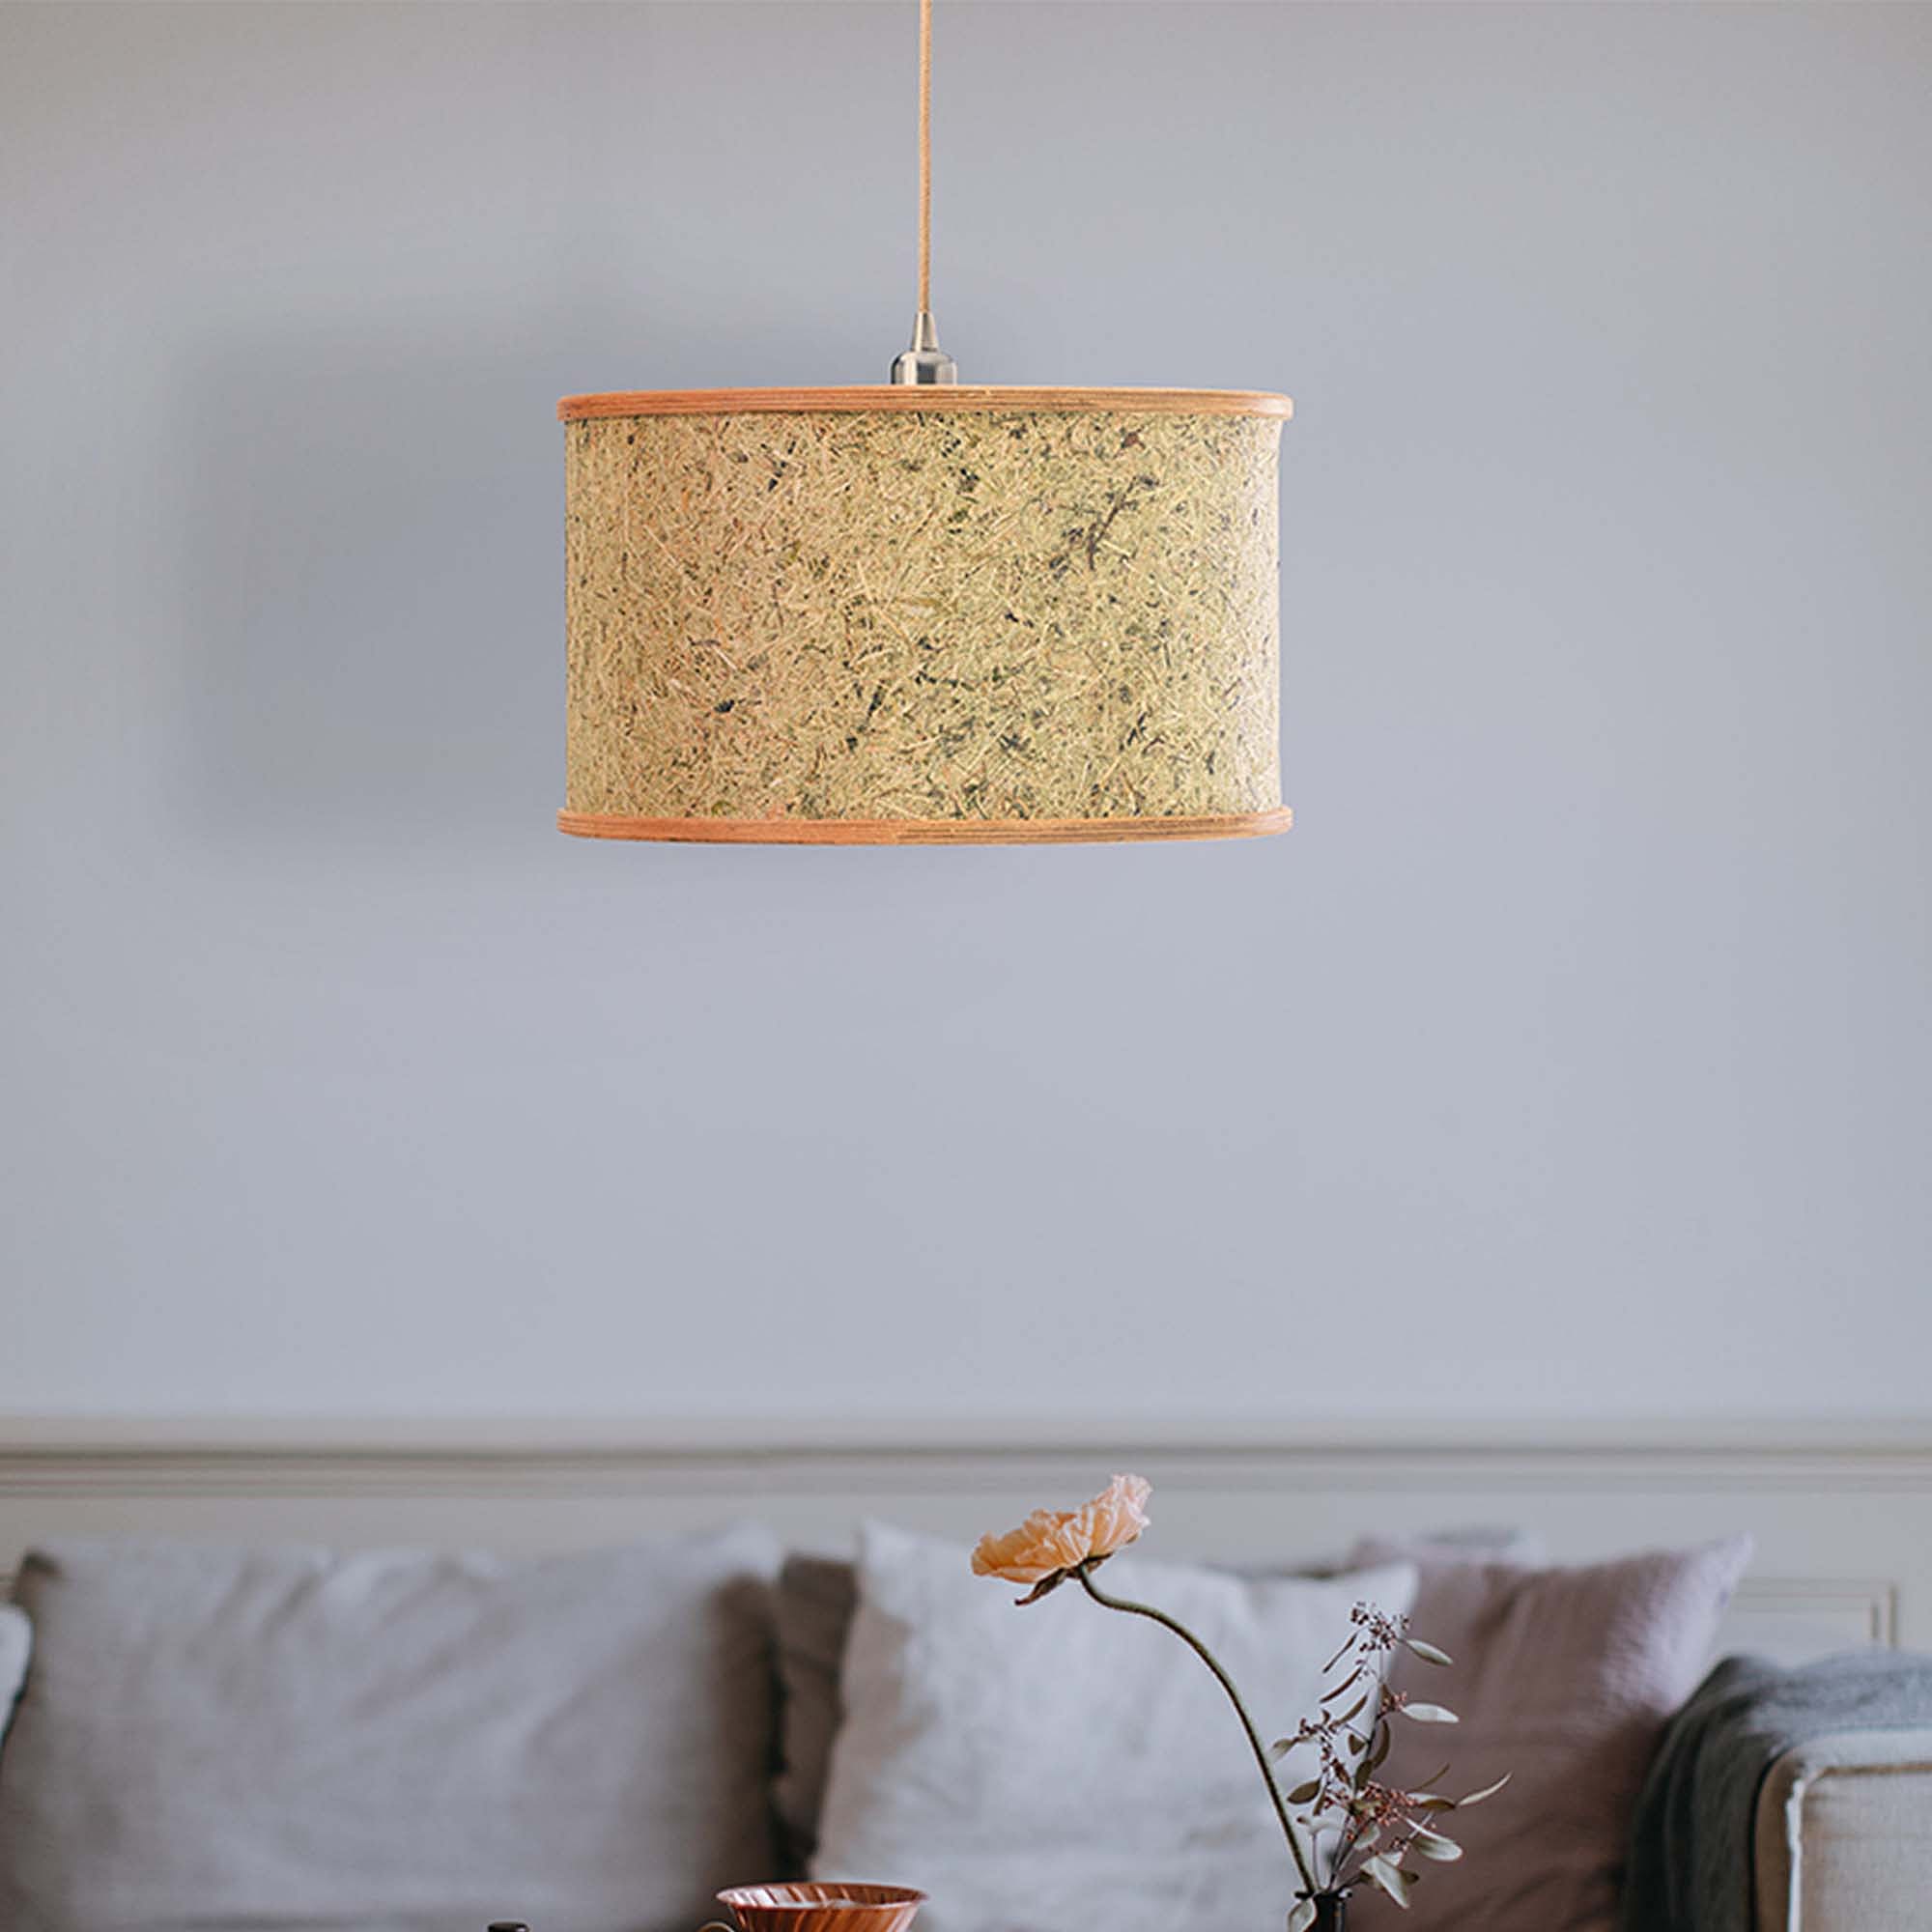 Lampen aus Heu & Holz für ein Stück Natur in deinem Zuhause!